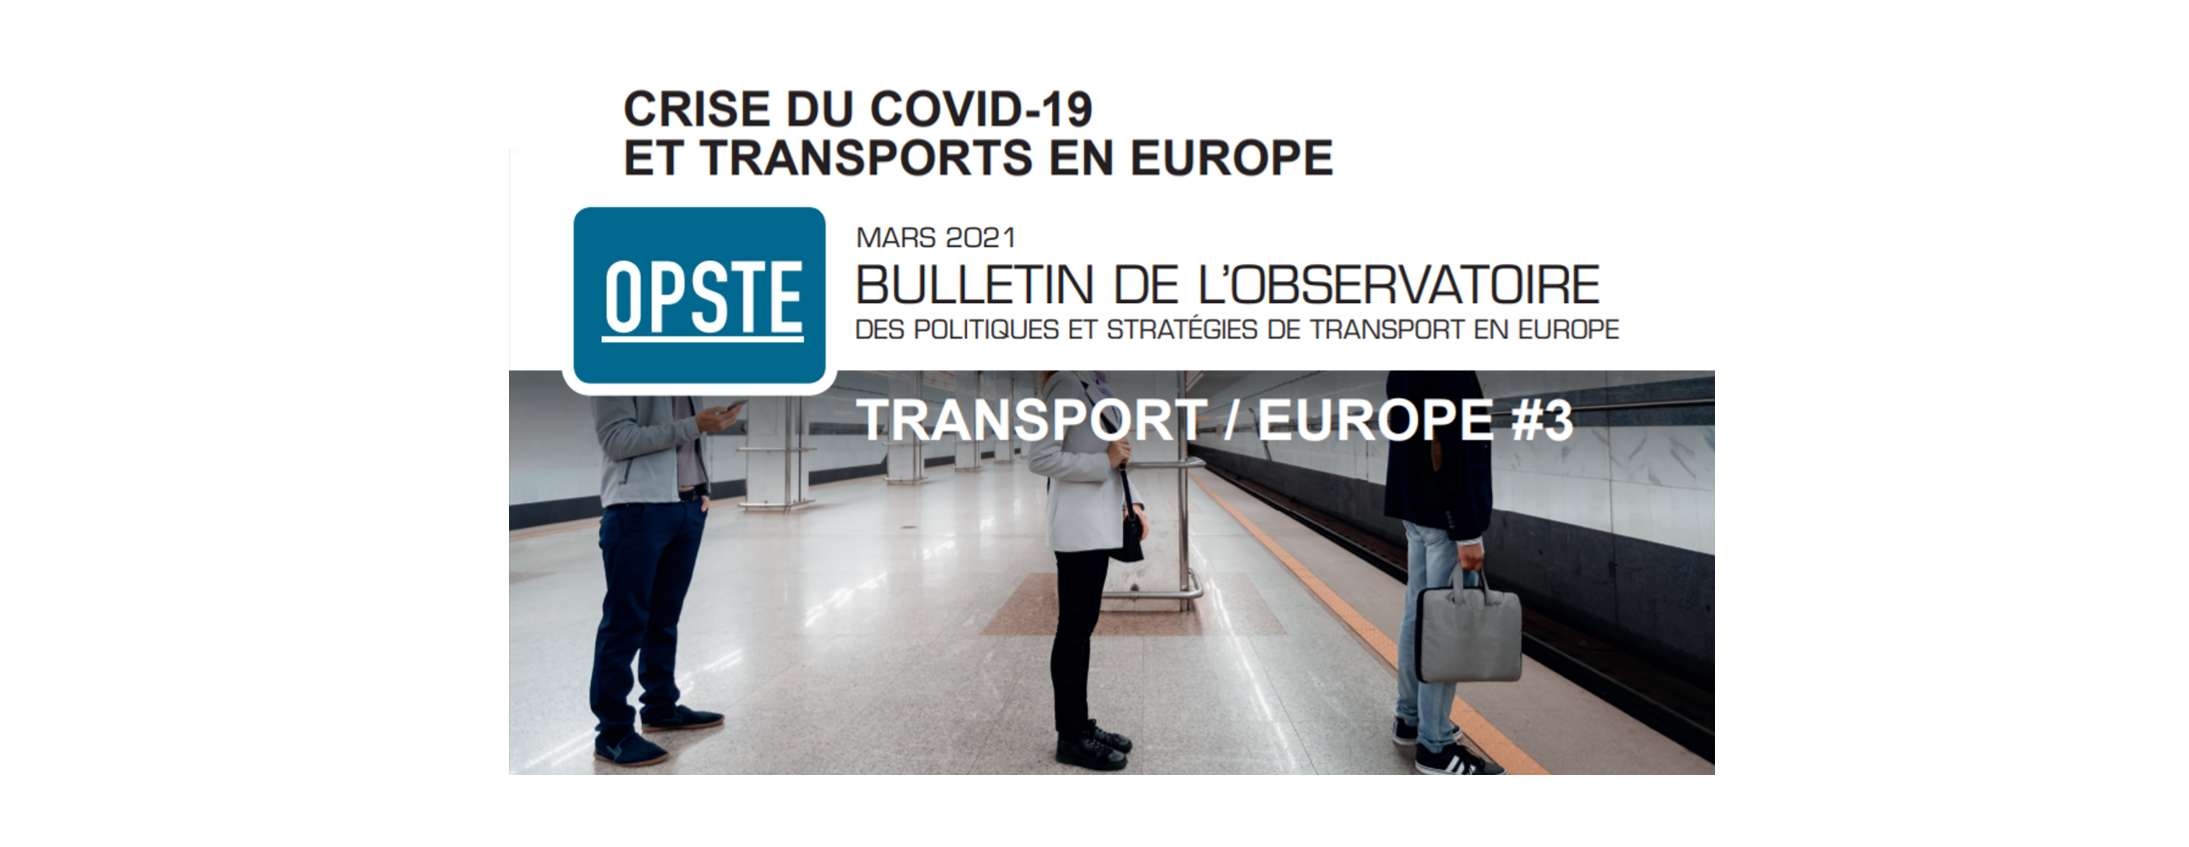 [VEILLE] Crise du Covid-19 et transport en Europe : comment le secteur s'est adapté ?